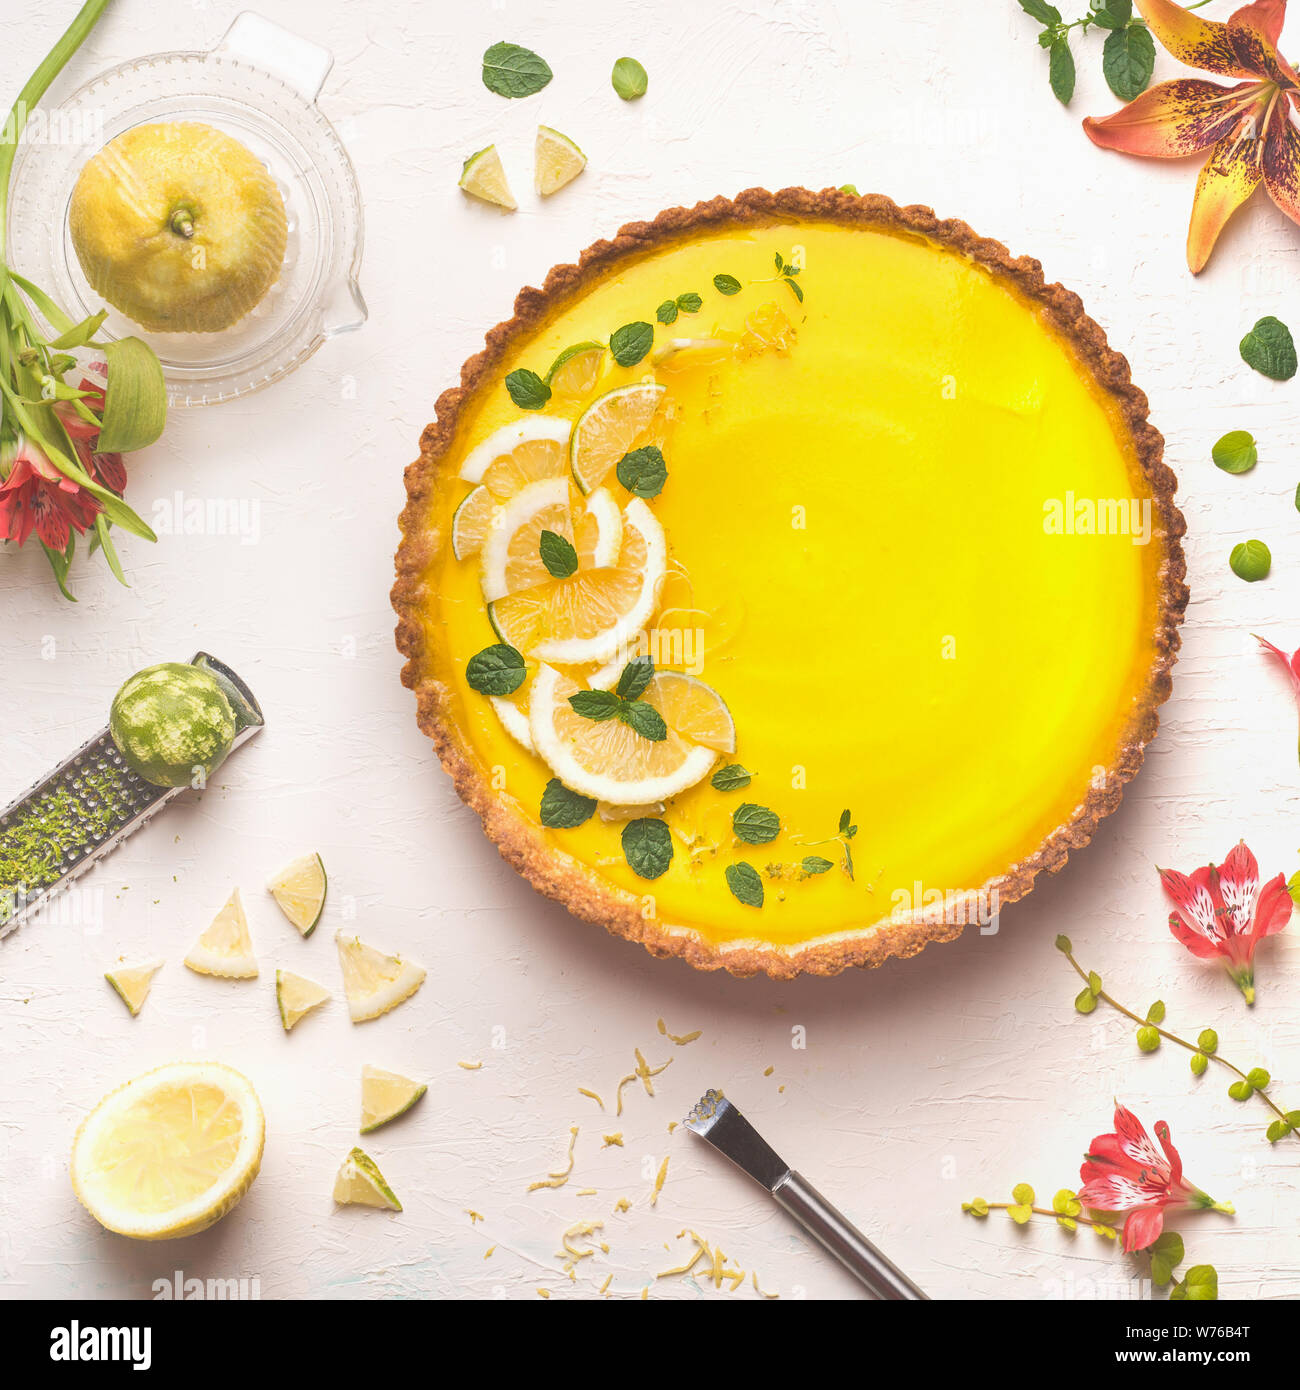 Tarte au citron jaune surmonté de tranches de lime et de citron sur fond de table blanc avec ingrédients agrumes et fleurs, vue d'en haut. Cuisine française Banque D'Images